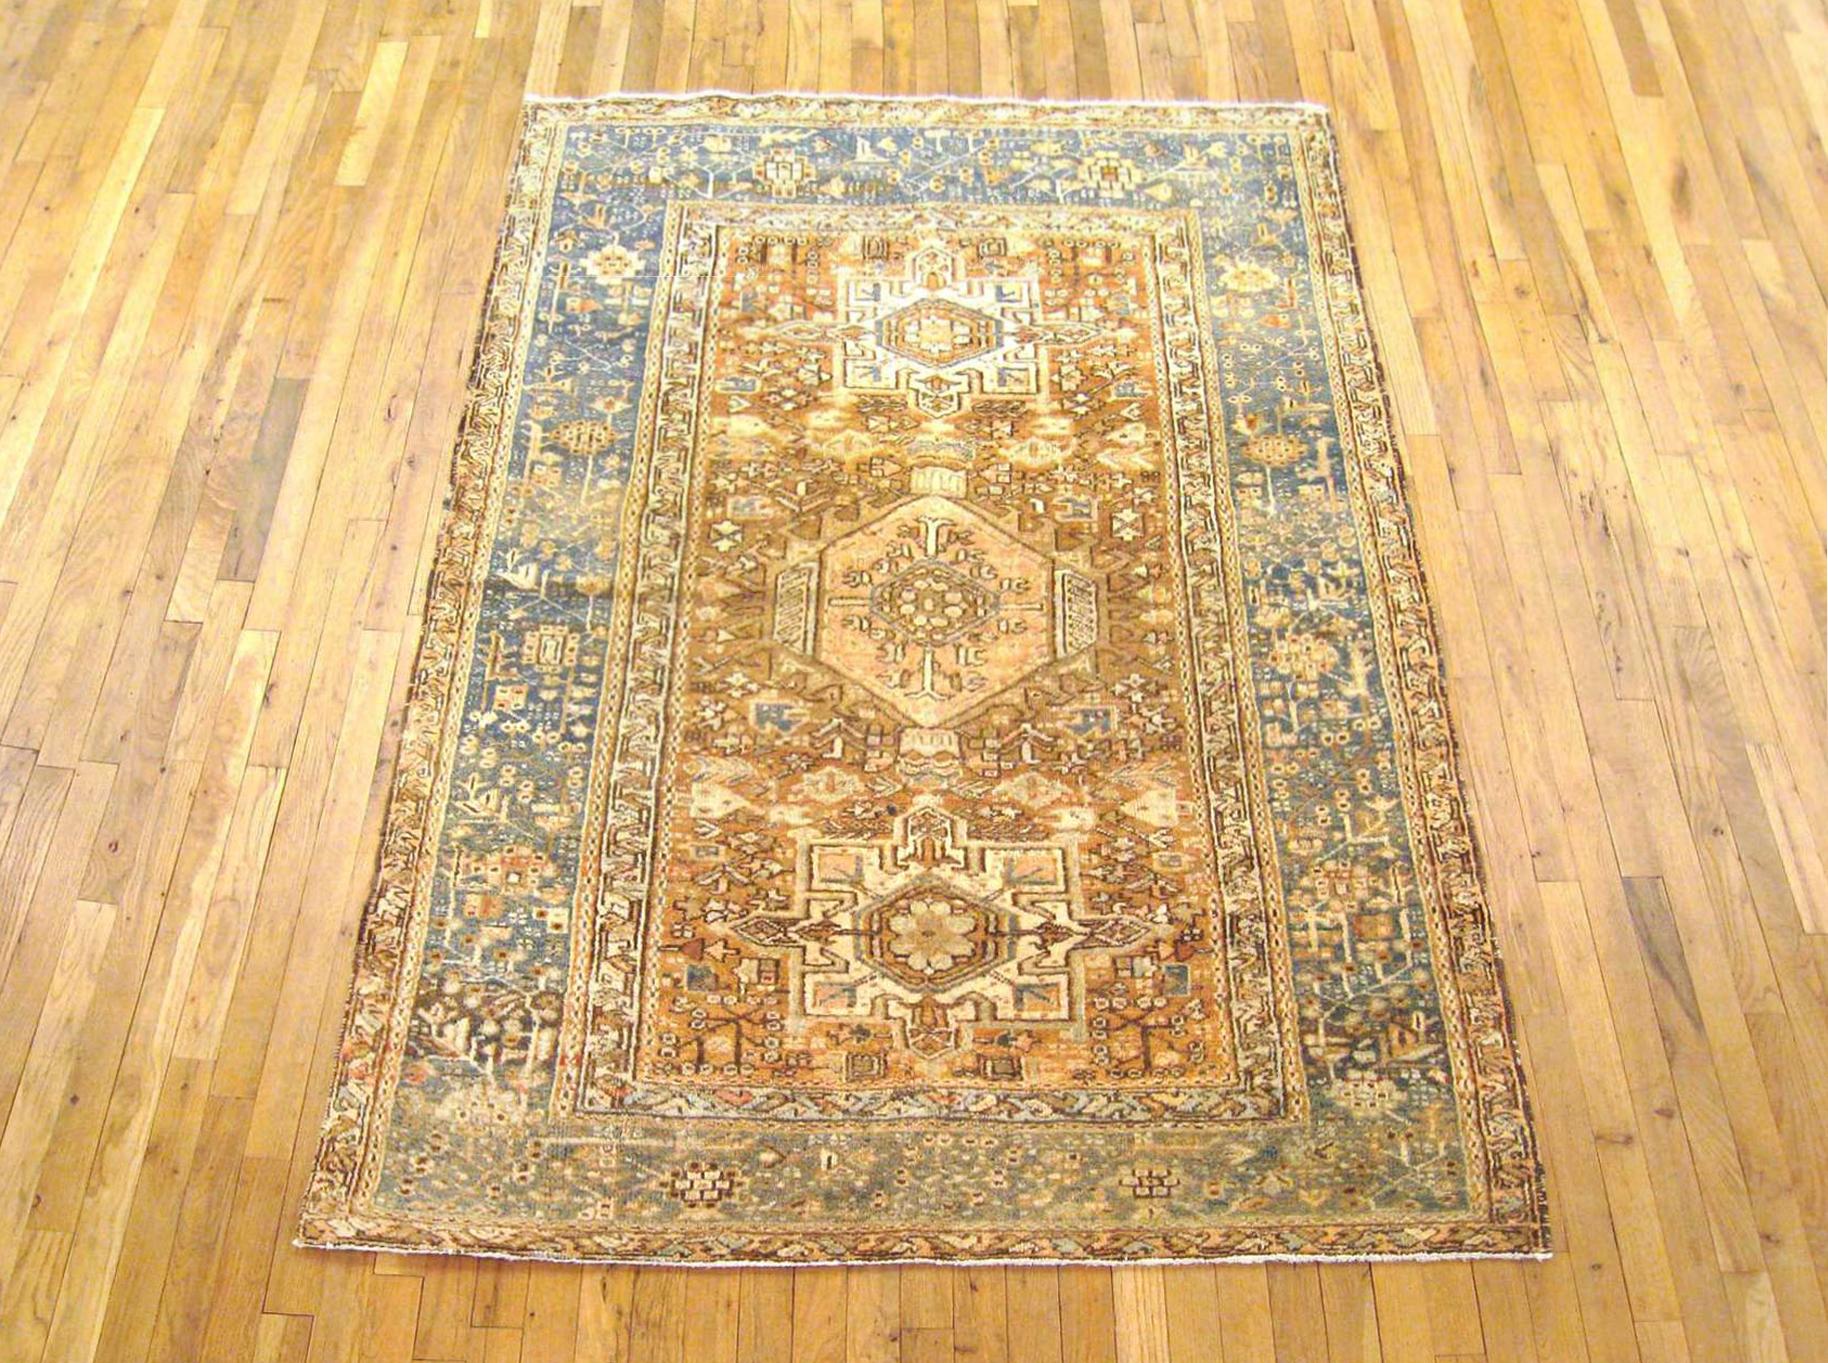 Antique Persian Heriz Karaja Oriental rug, in small size

An antique Persian Heriz Karaja oriental rug, size 6'5